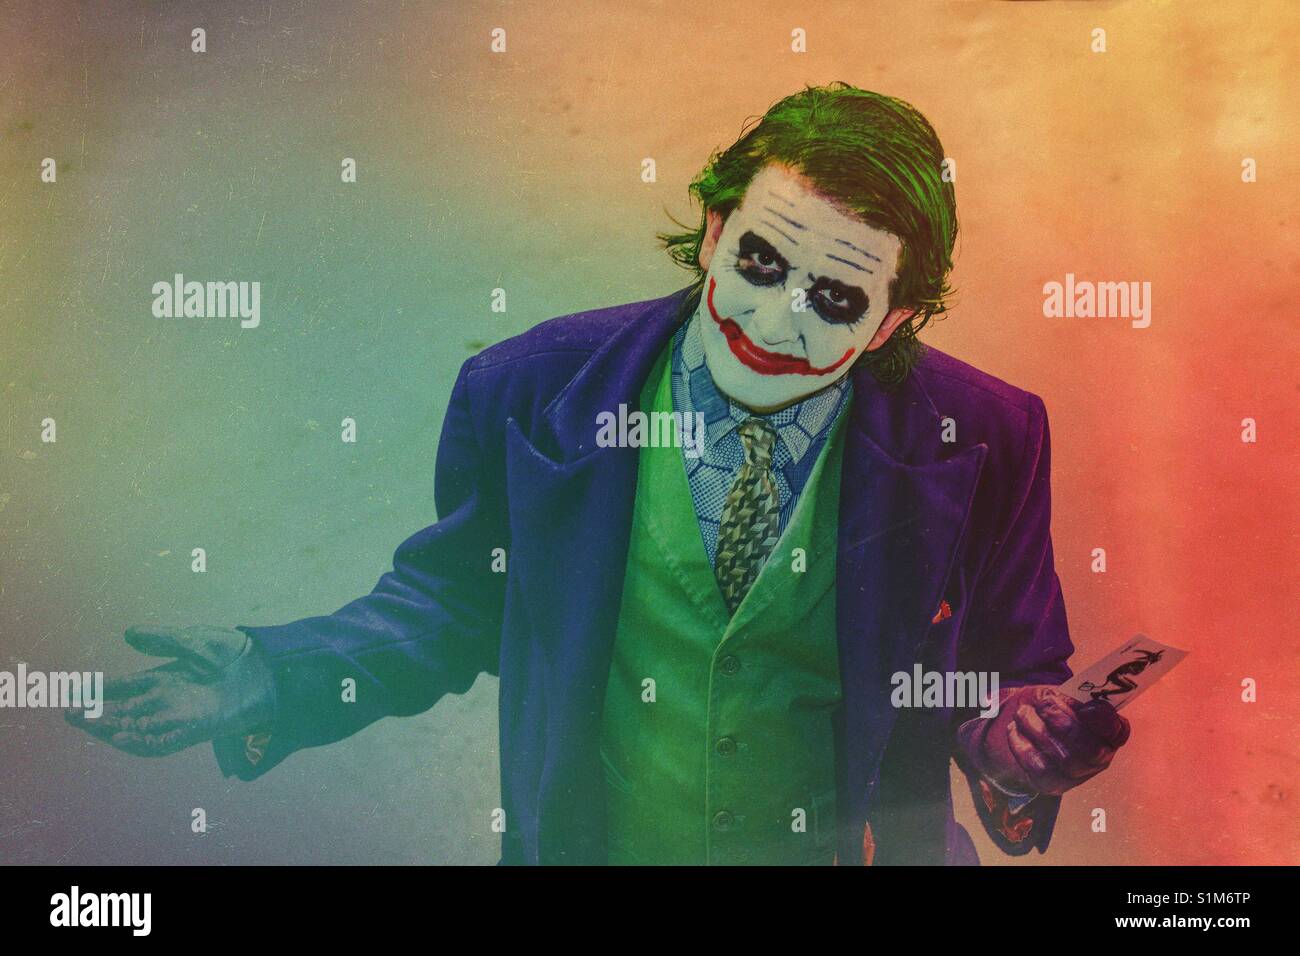 Der Joker aus Batman The Dark Knight Film ist ein Bösewicht und schlechten Kerl, der von einem cos spielen Mann an einem Comic Con Ereignis dargestellt ist Stockfoto